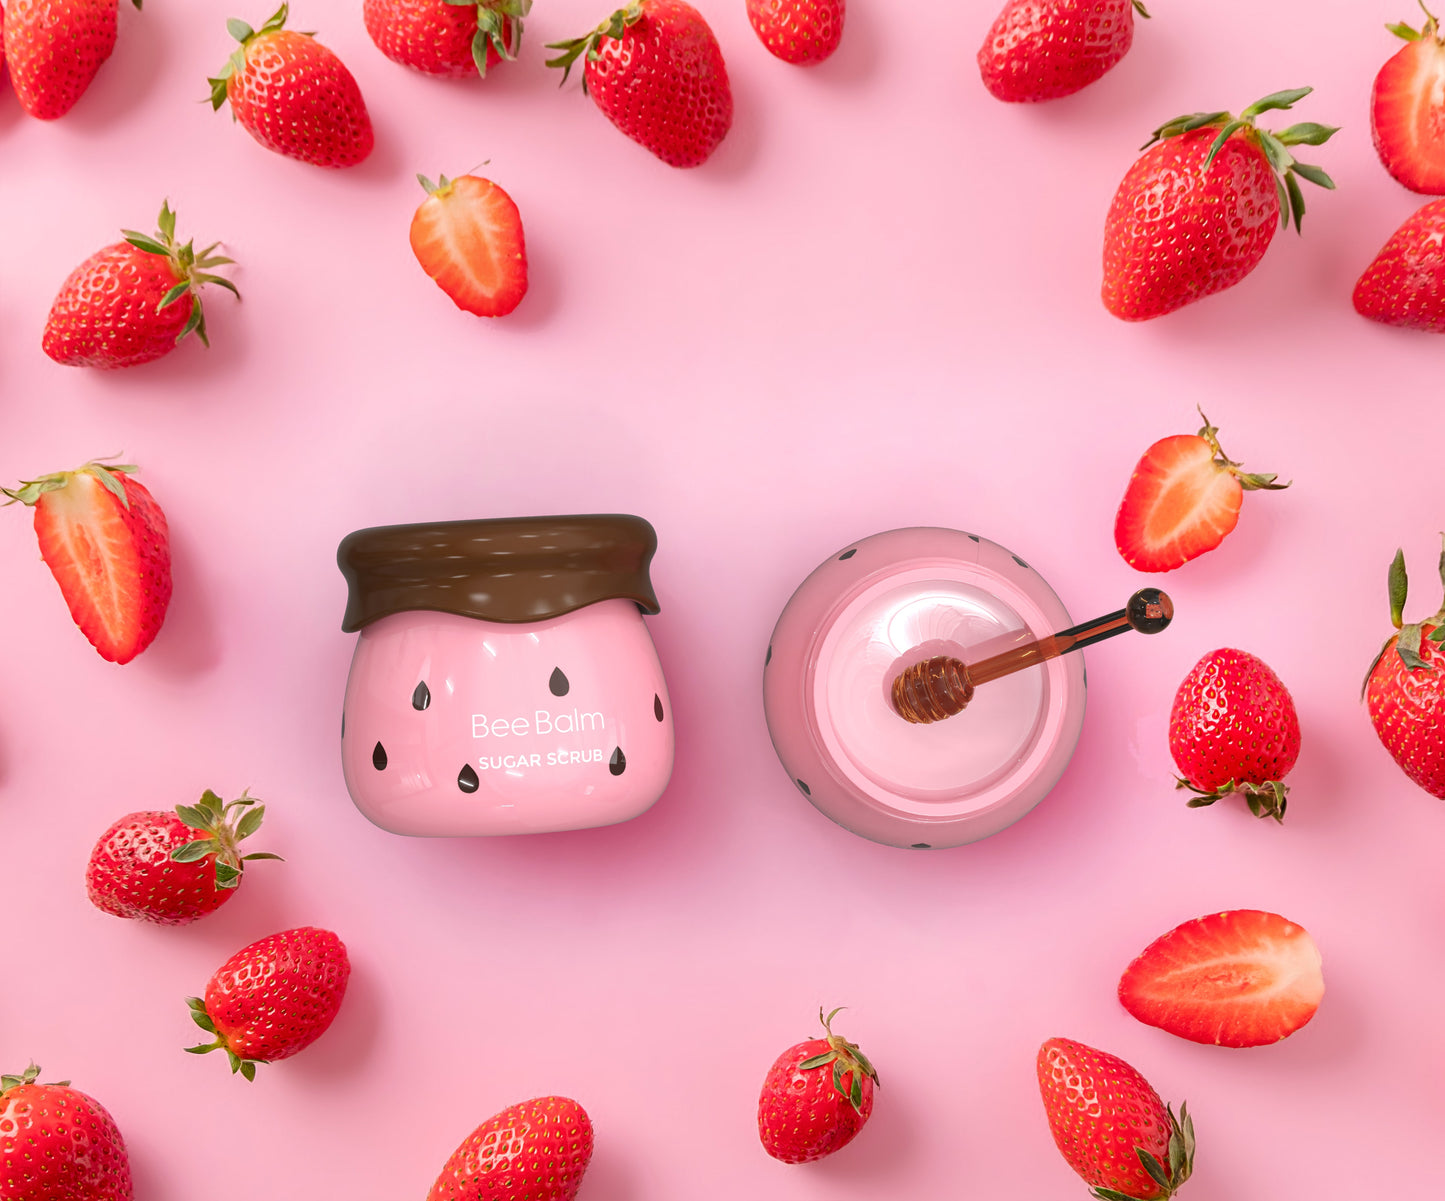 Strawberry Lip Mask + Sugar Scrub Set